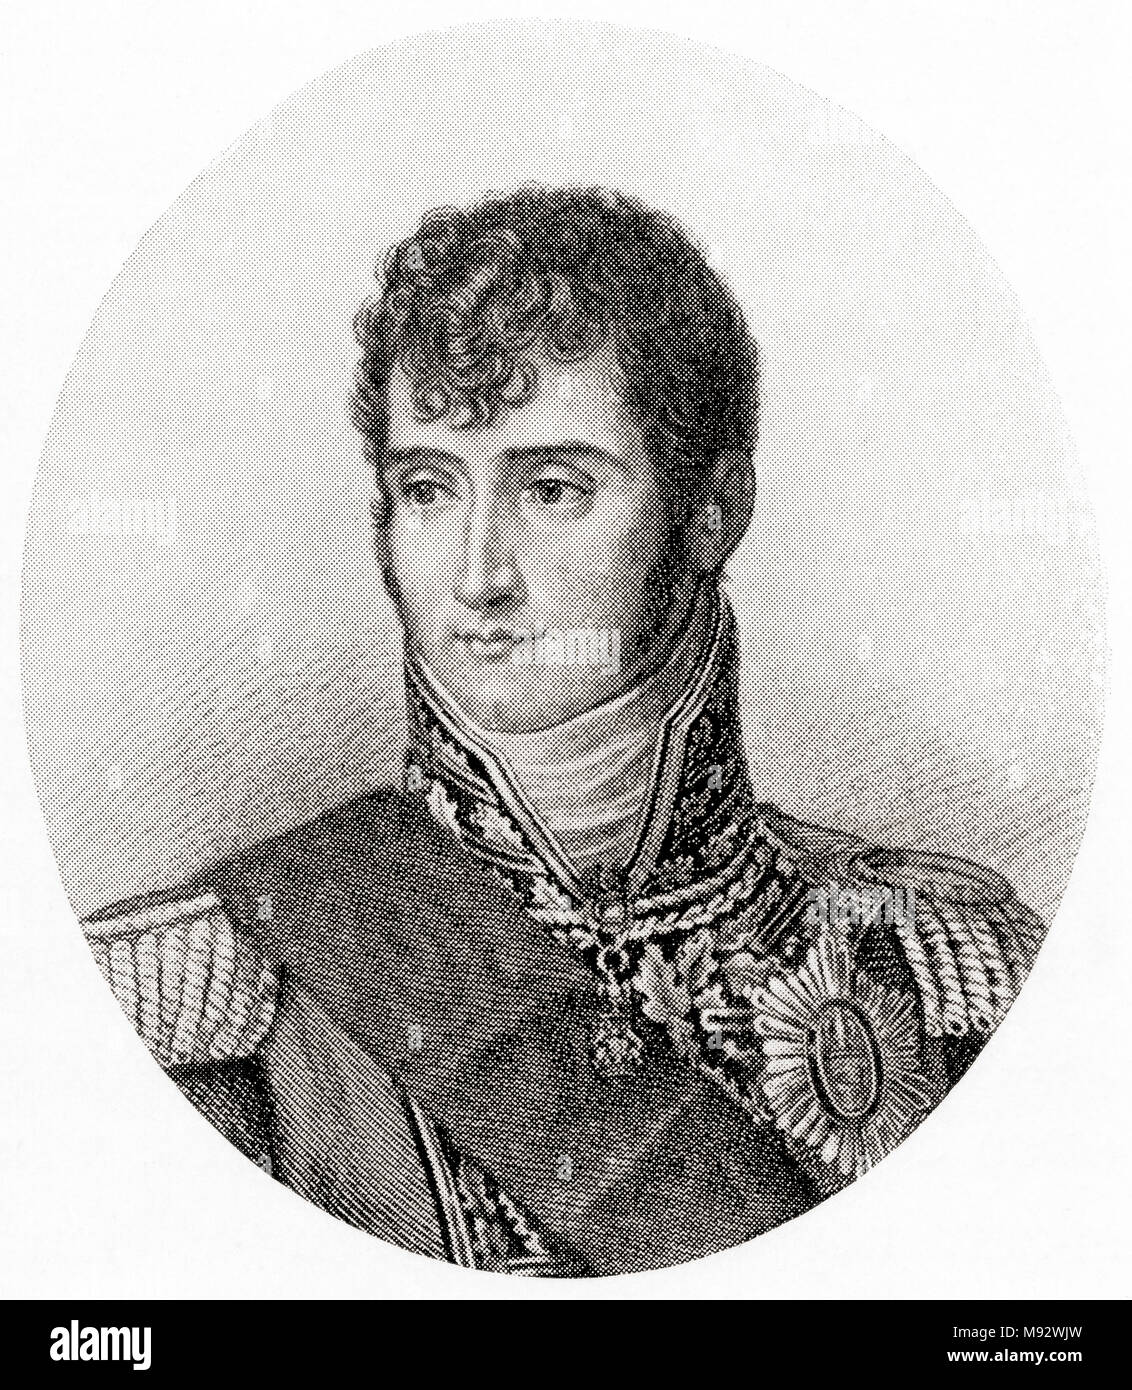 Lucien Bonaparte, principe Français, primo principe di Canino e Musignano, 1775 - 1840. Statista francese. Da Hutchinson nella storia delle nazioni, pubblicato 1915 Foto Stock